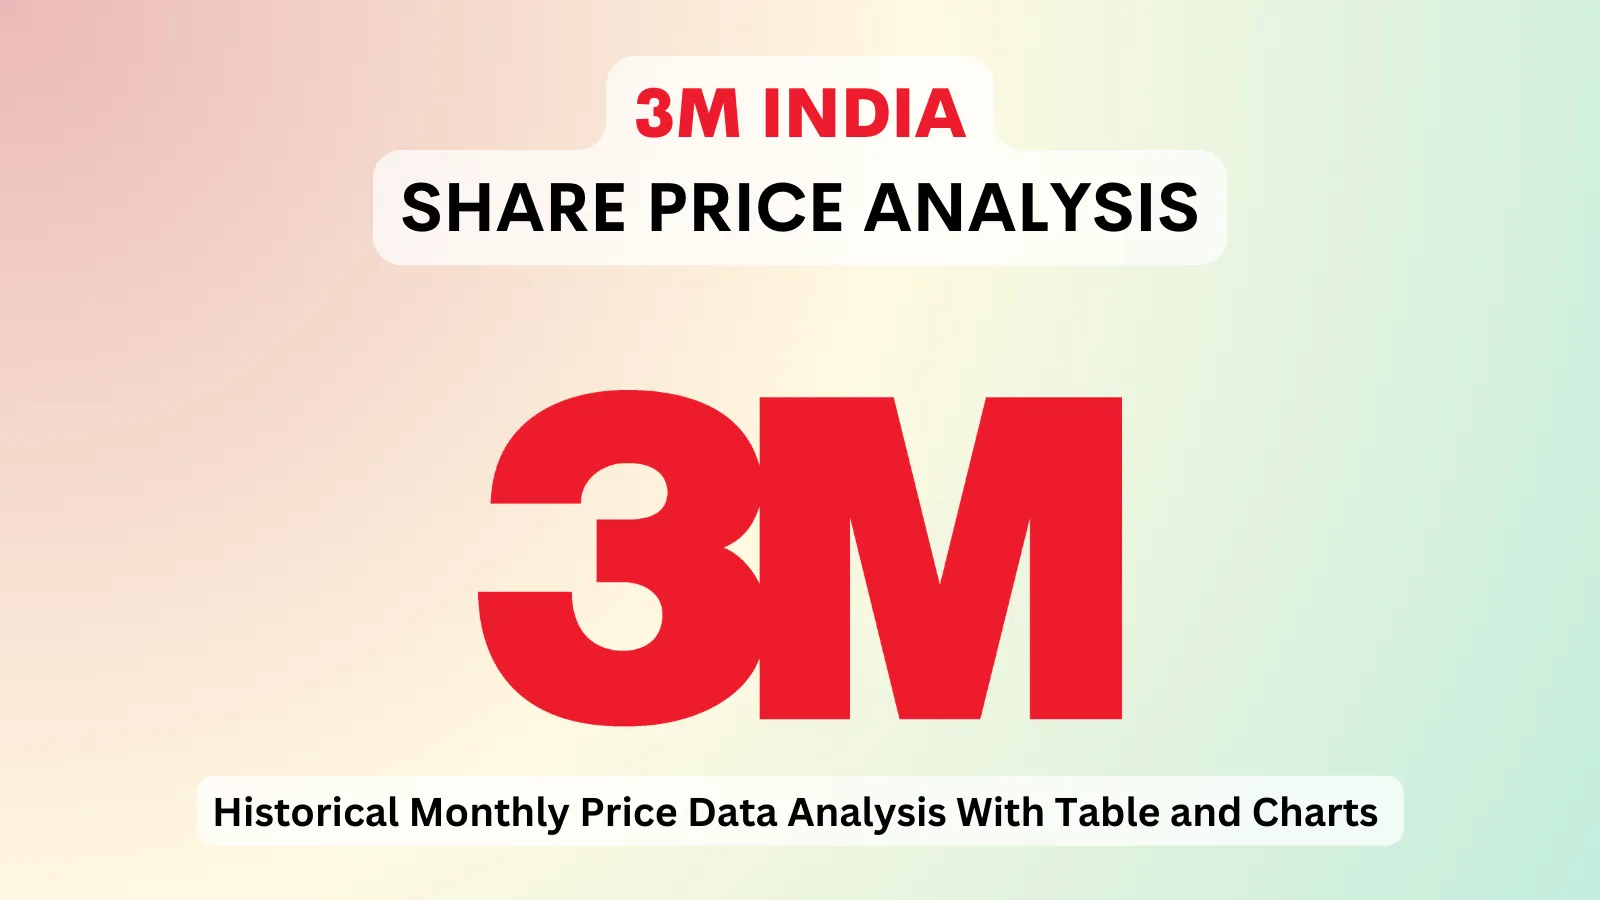 3M India share price analysis